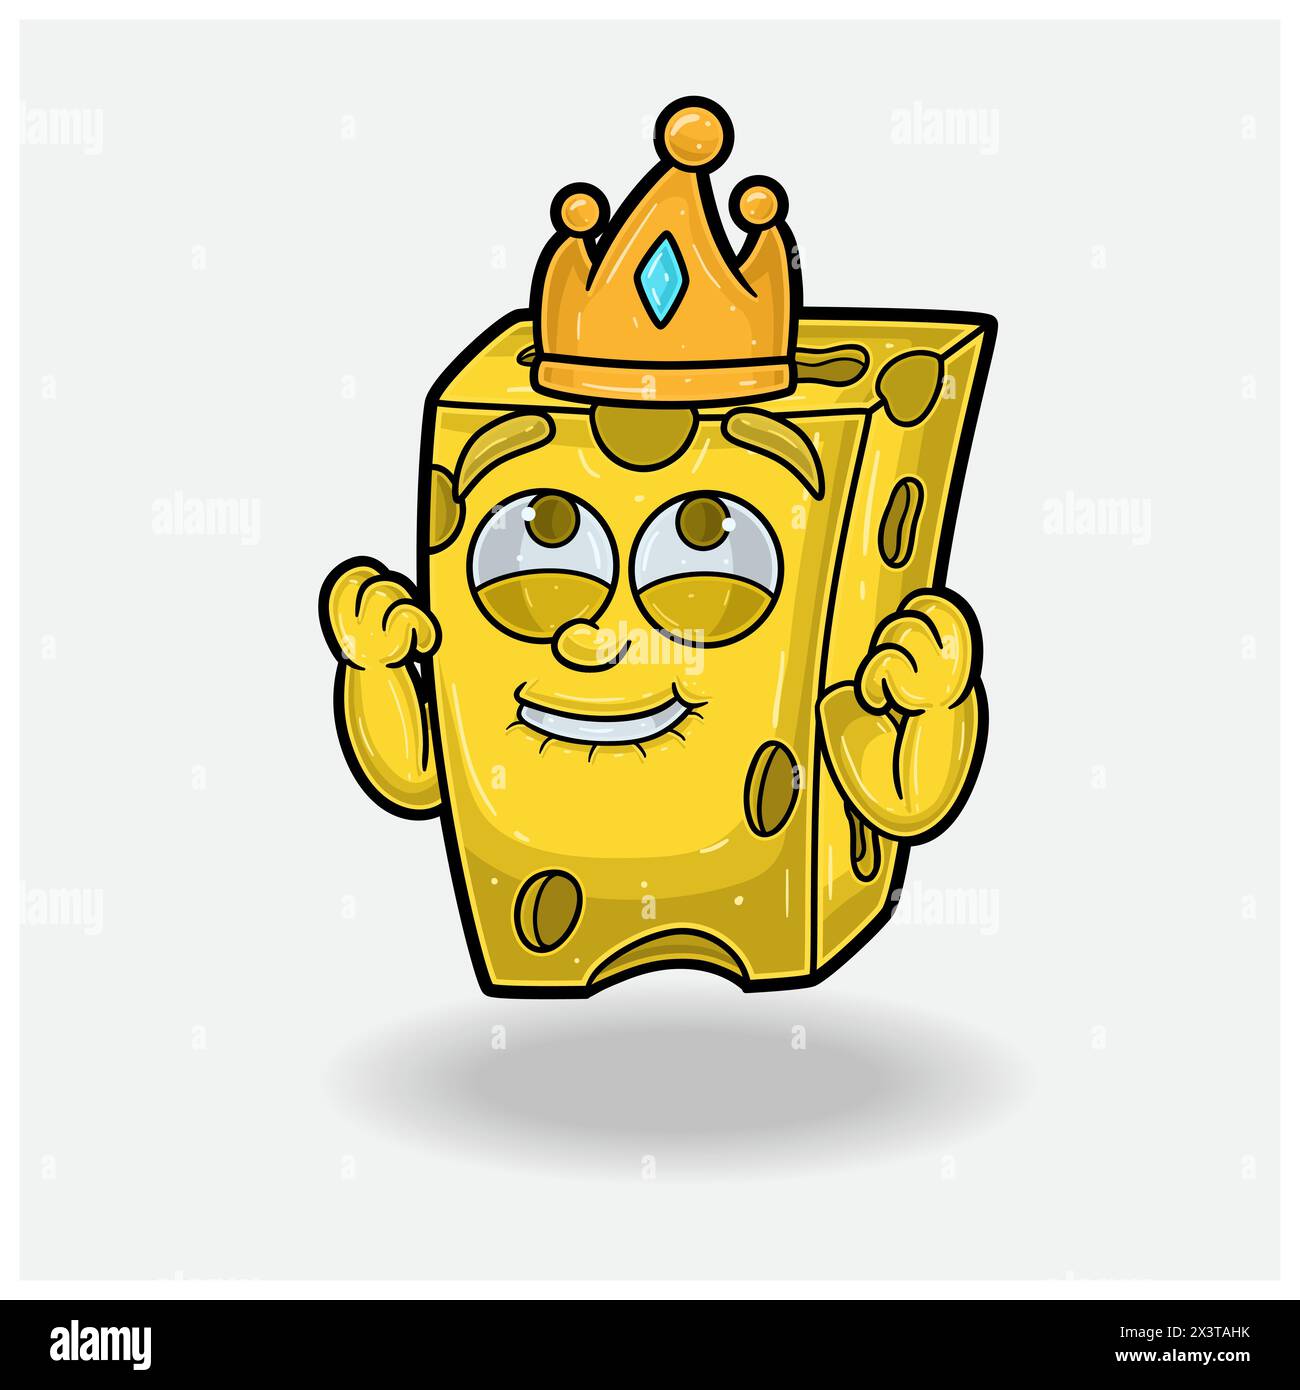 Cheese Mascot personnage Cartoon avec expression heureuse. Illustrations vectorielles Illustration de Vecteur